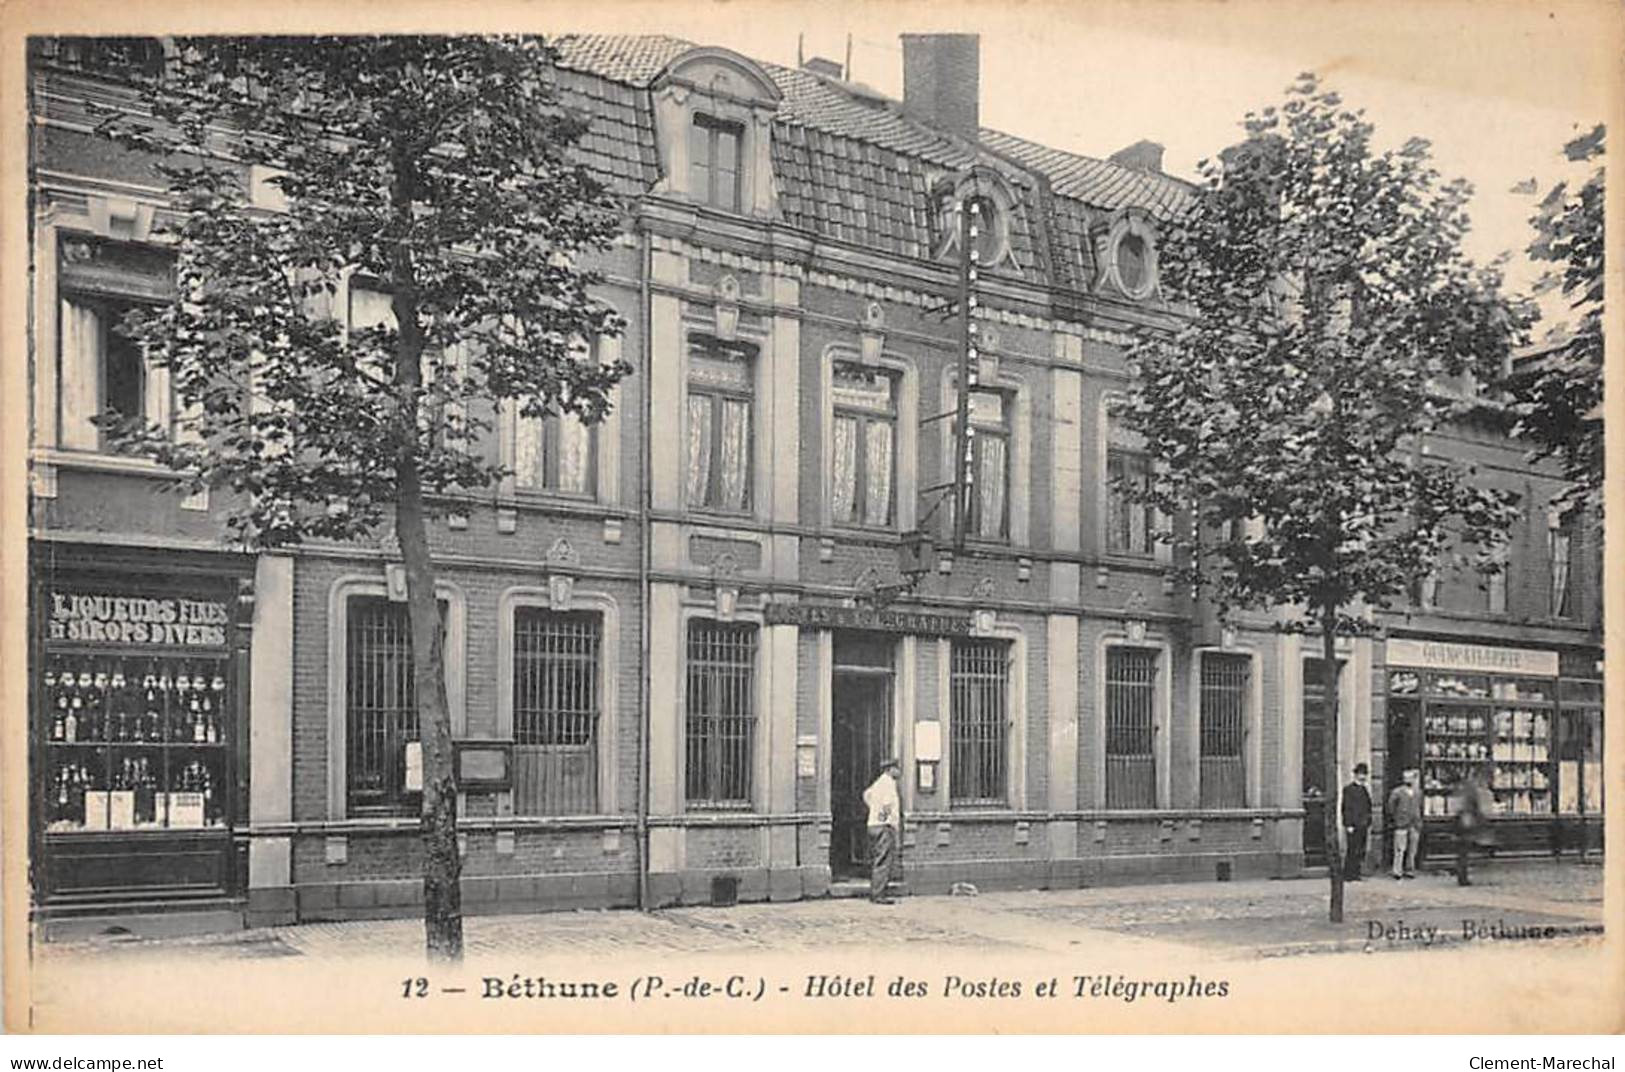 BETHUNE - Hôtel des Postes et Télégraphes - très bon état